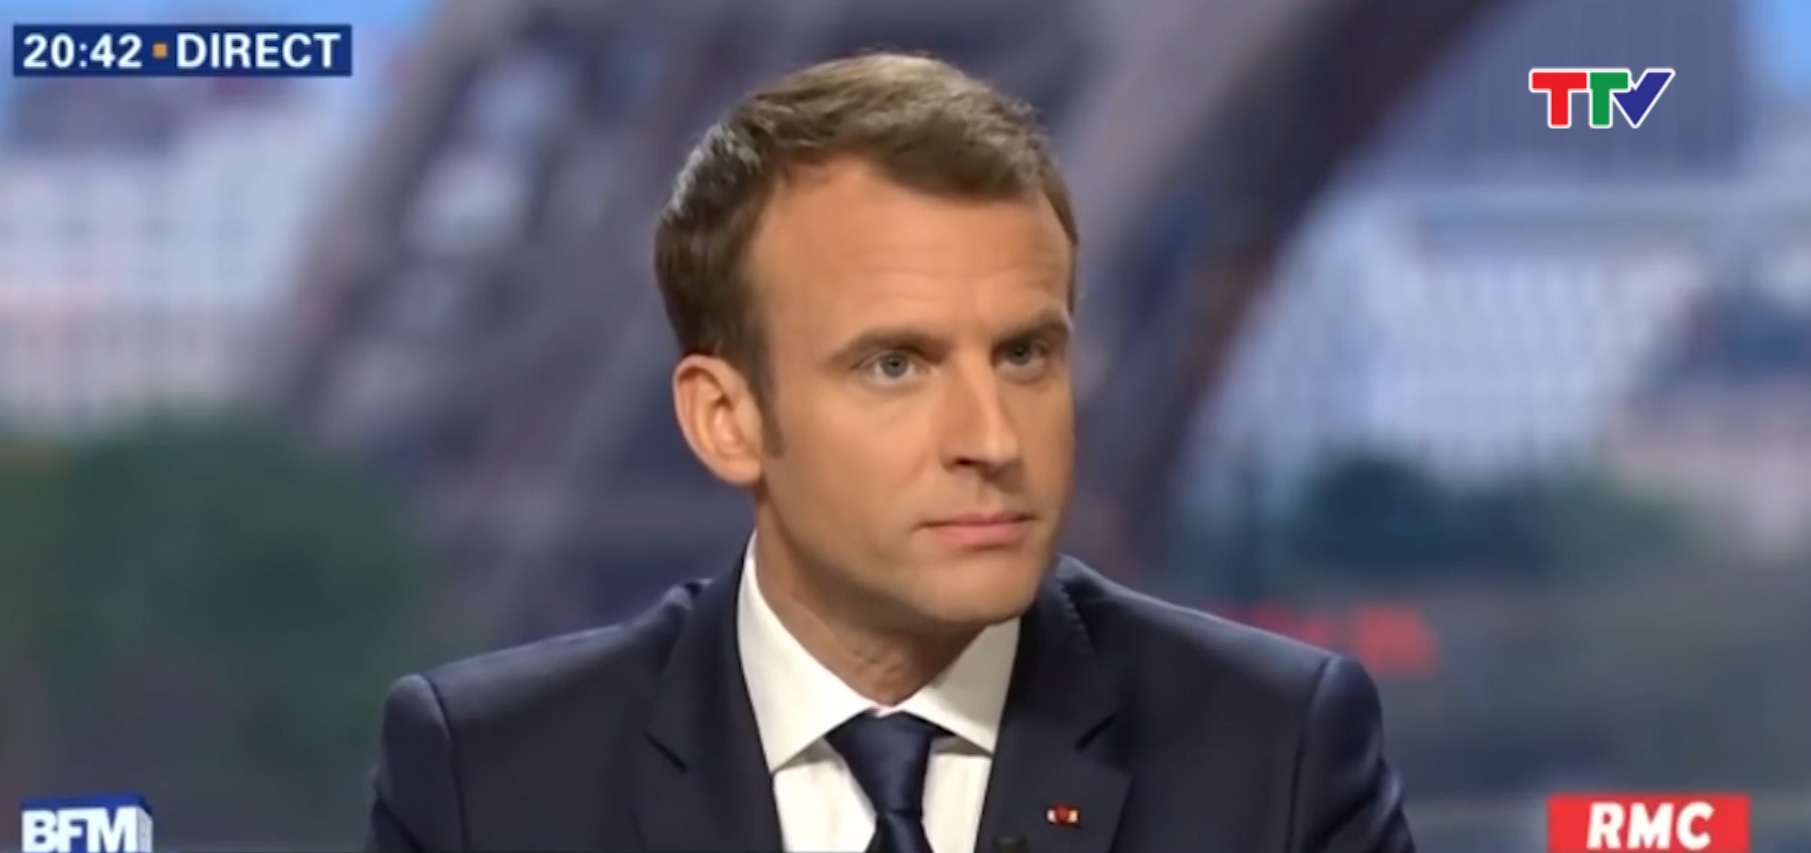 Tổng thống Pháp khẳng định chuẩn bị giải pháp chính trị cho Syria